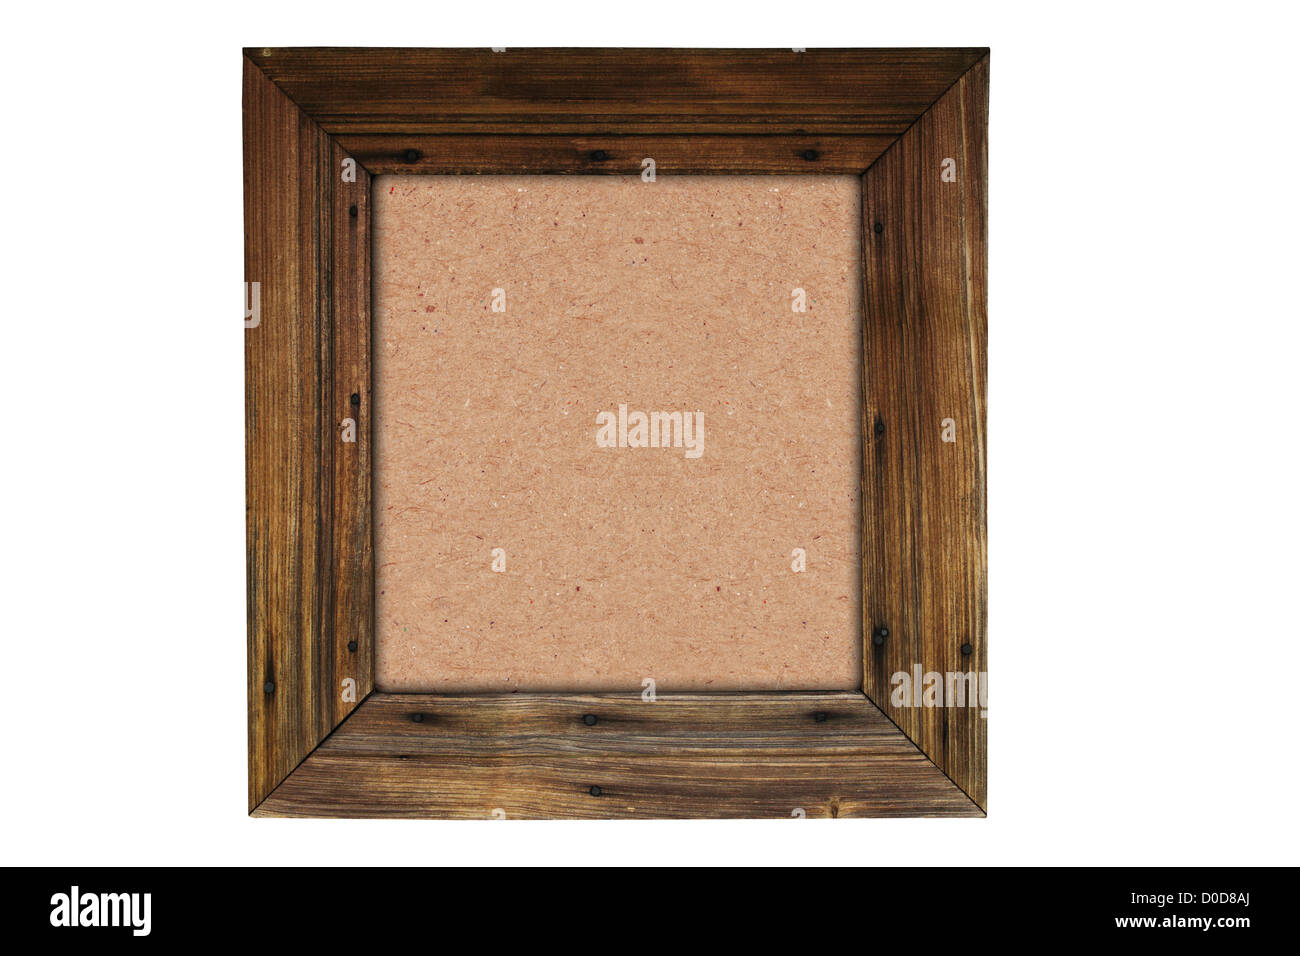 Vecchio brown di legno con la trama della carta all'interno isolato su sfondo bianco Foto Stock